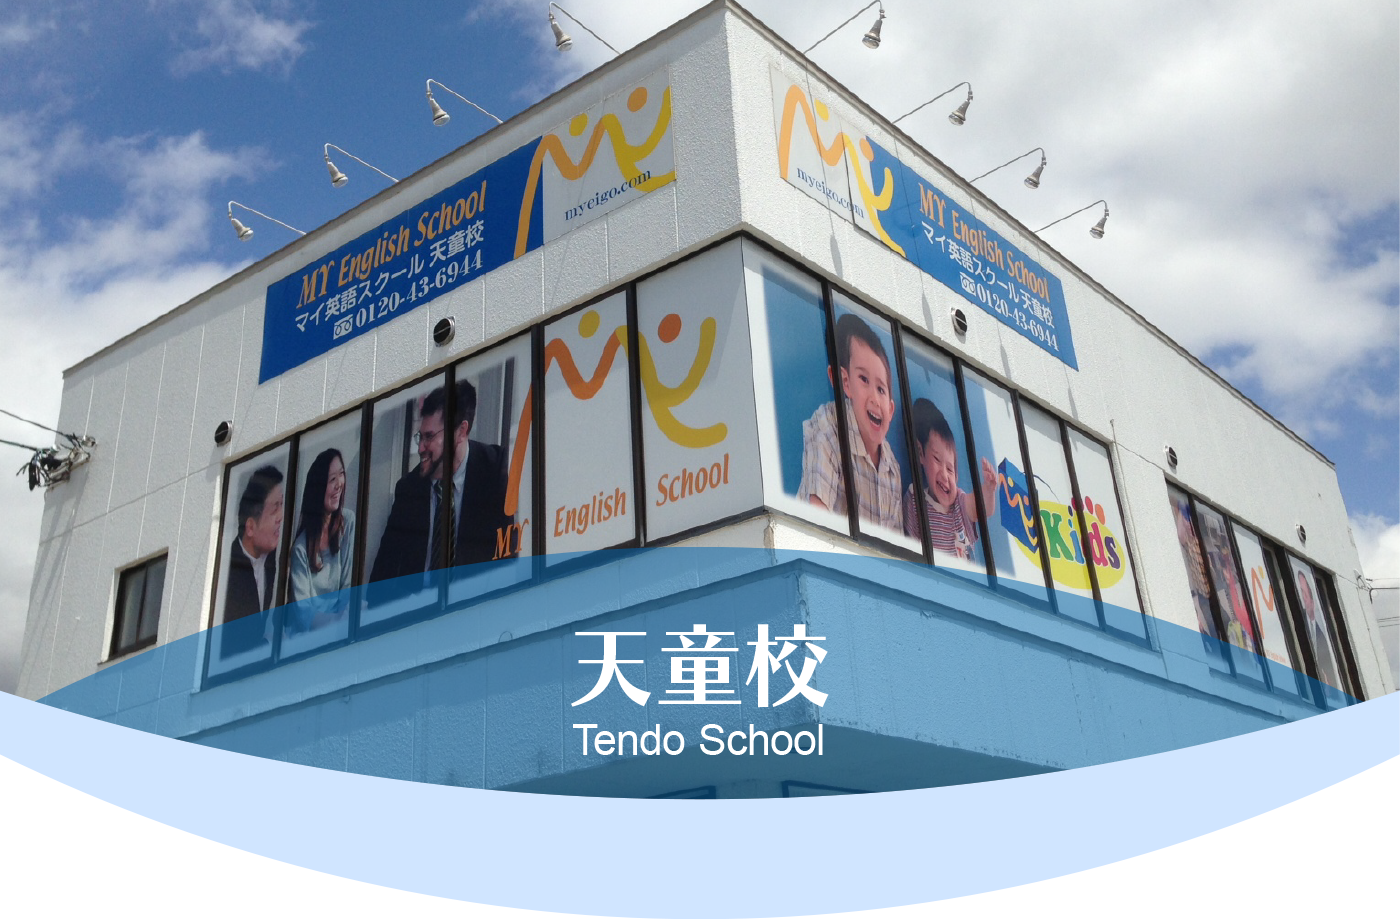 天童校 School Information